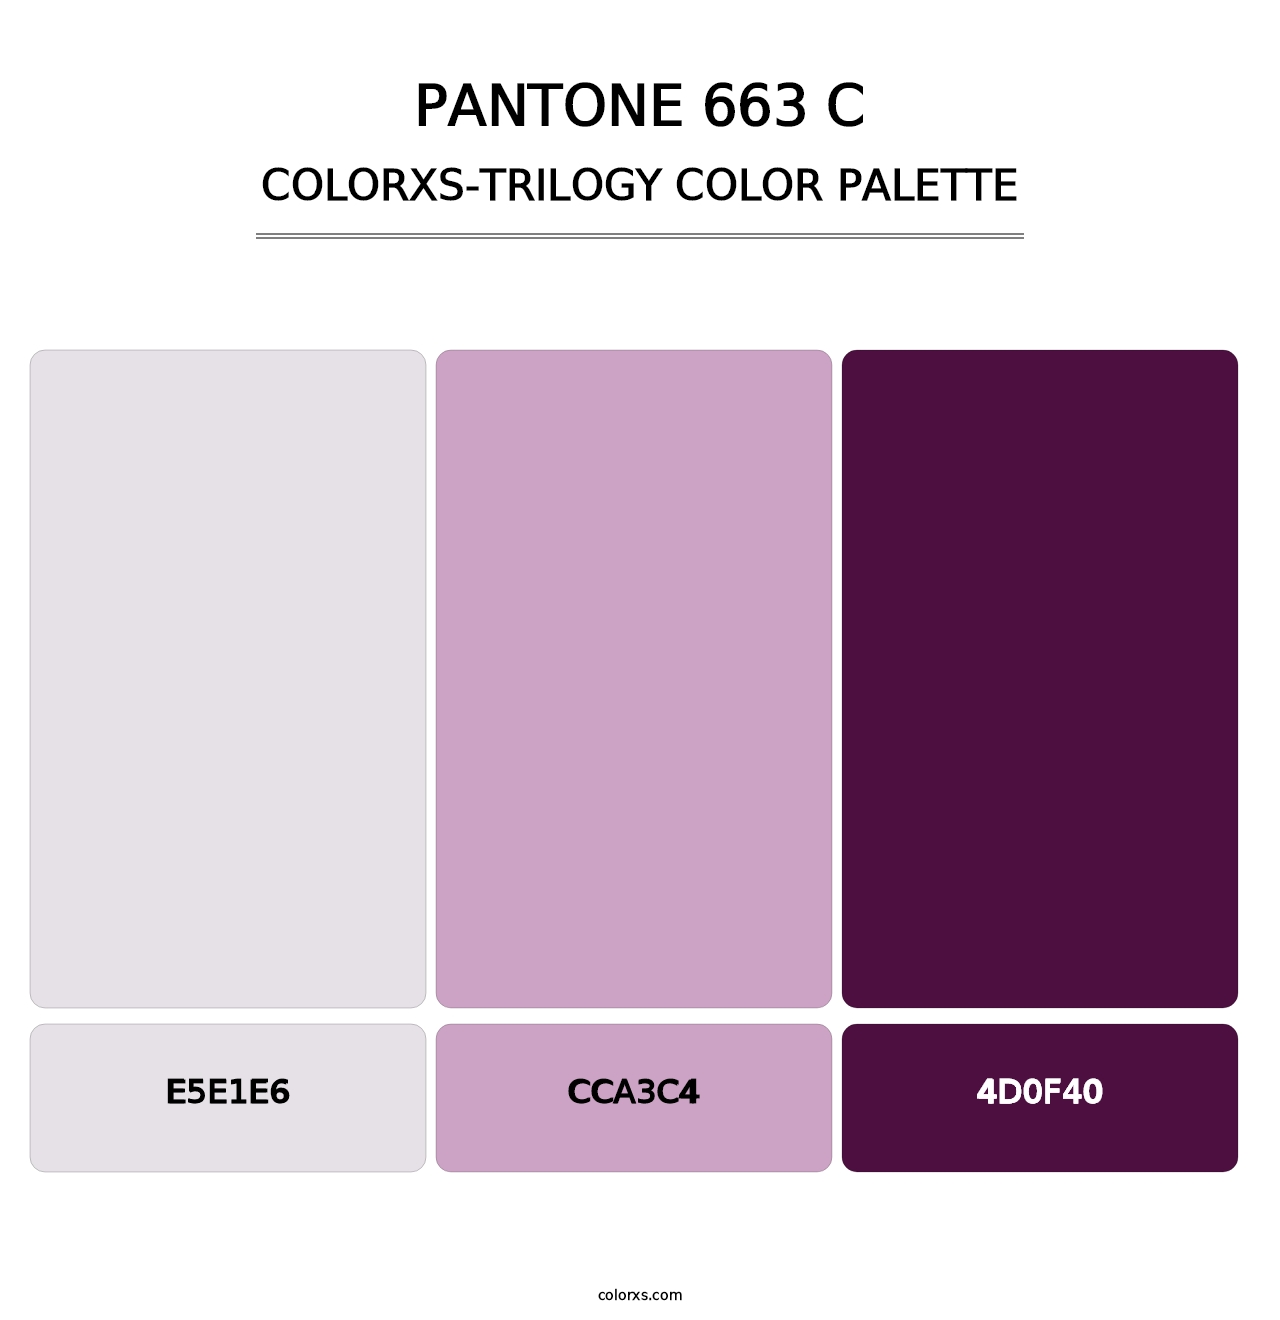 PANTONE 663 C - Colorxs Trilogy Palette